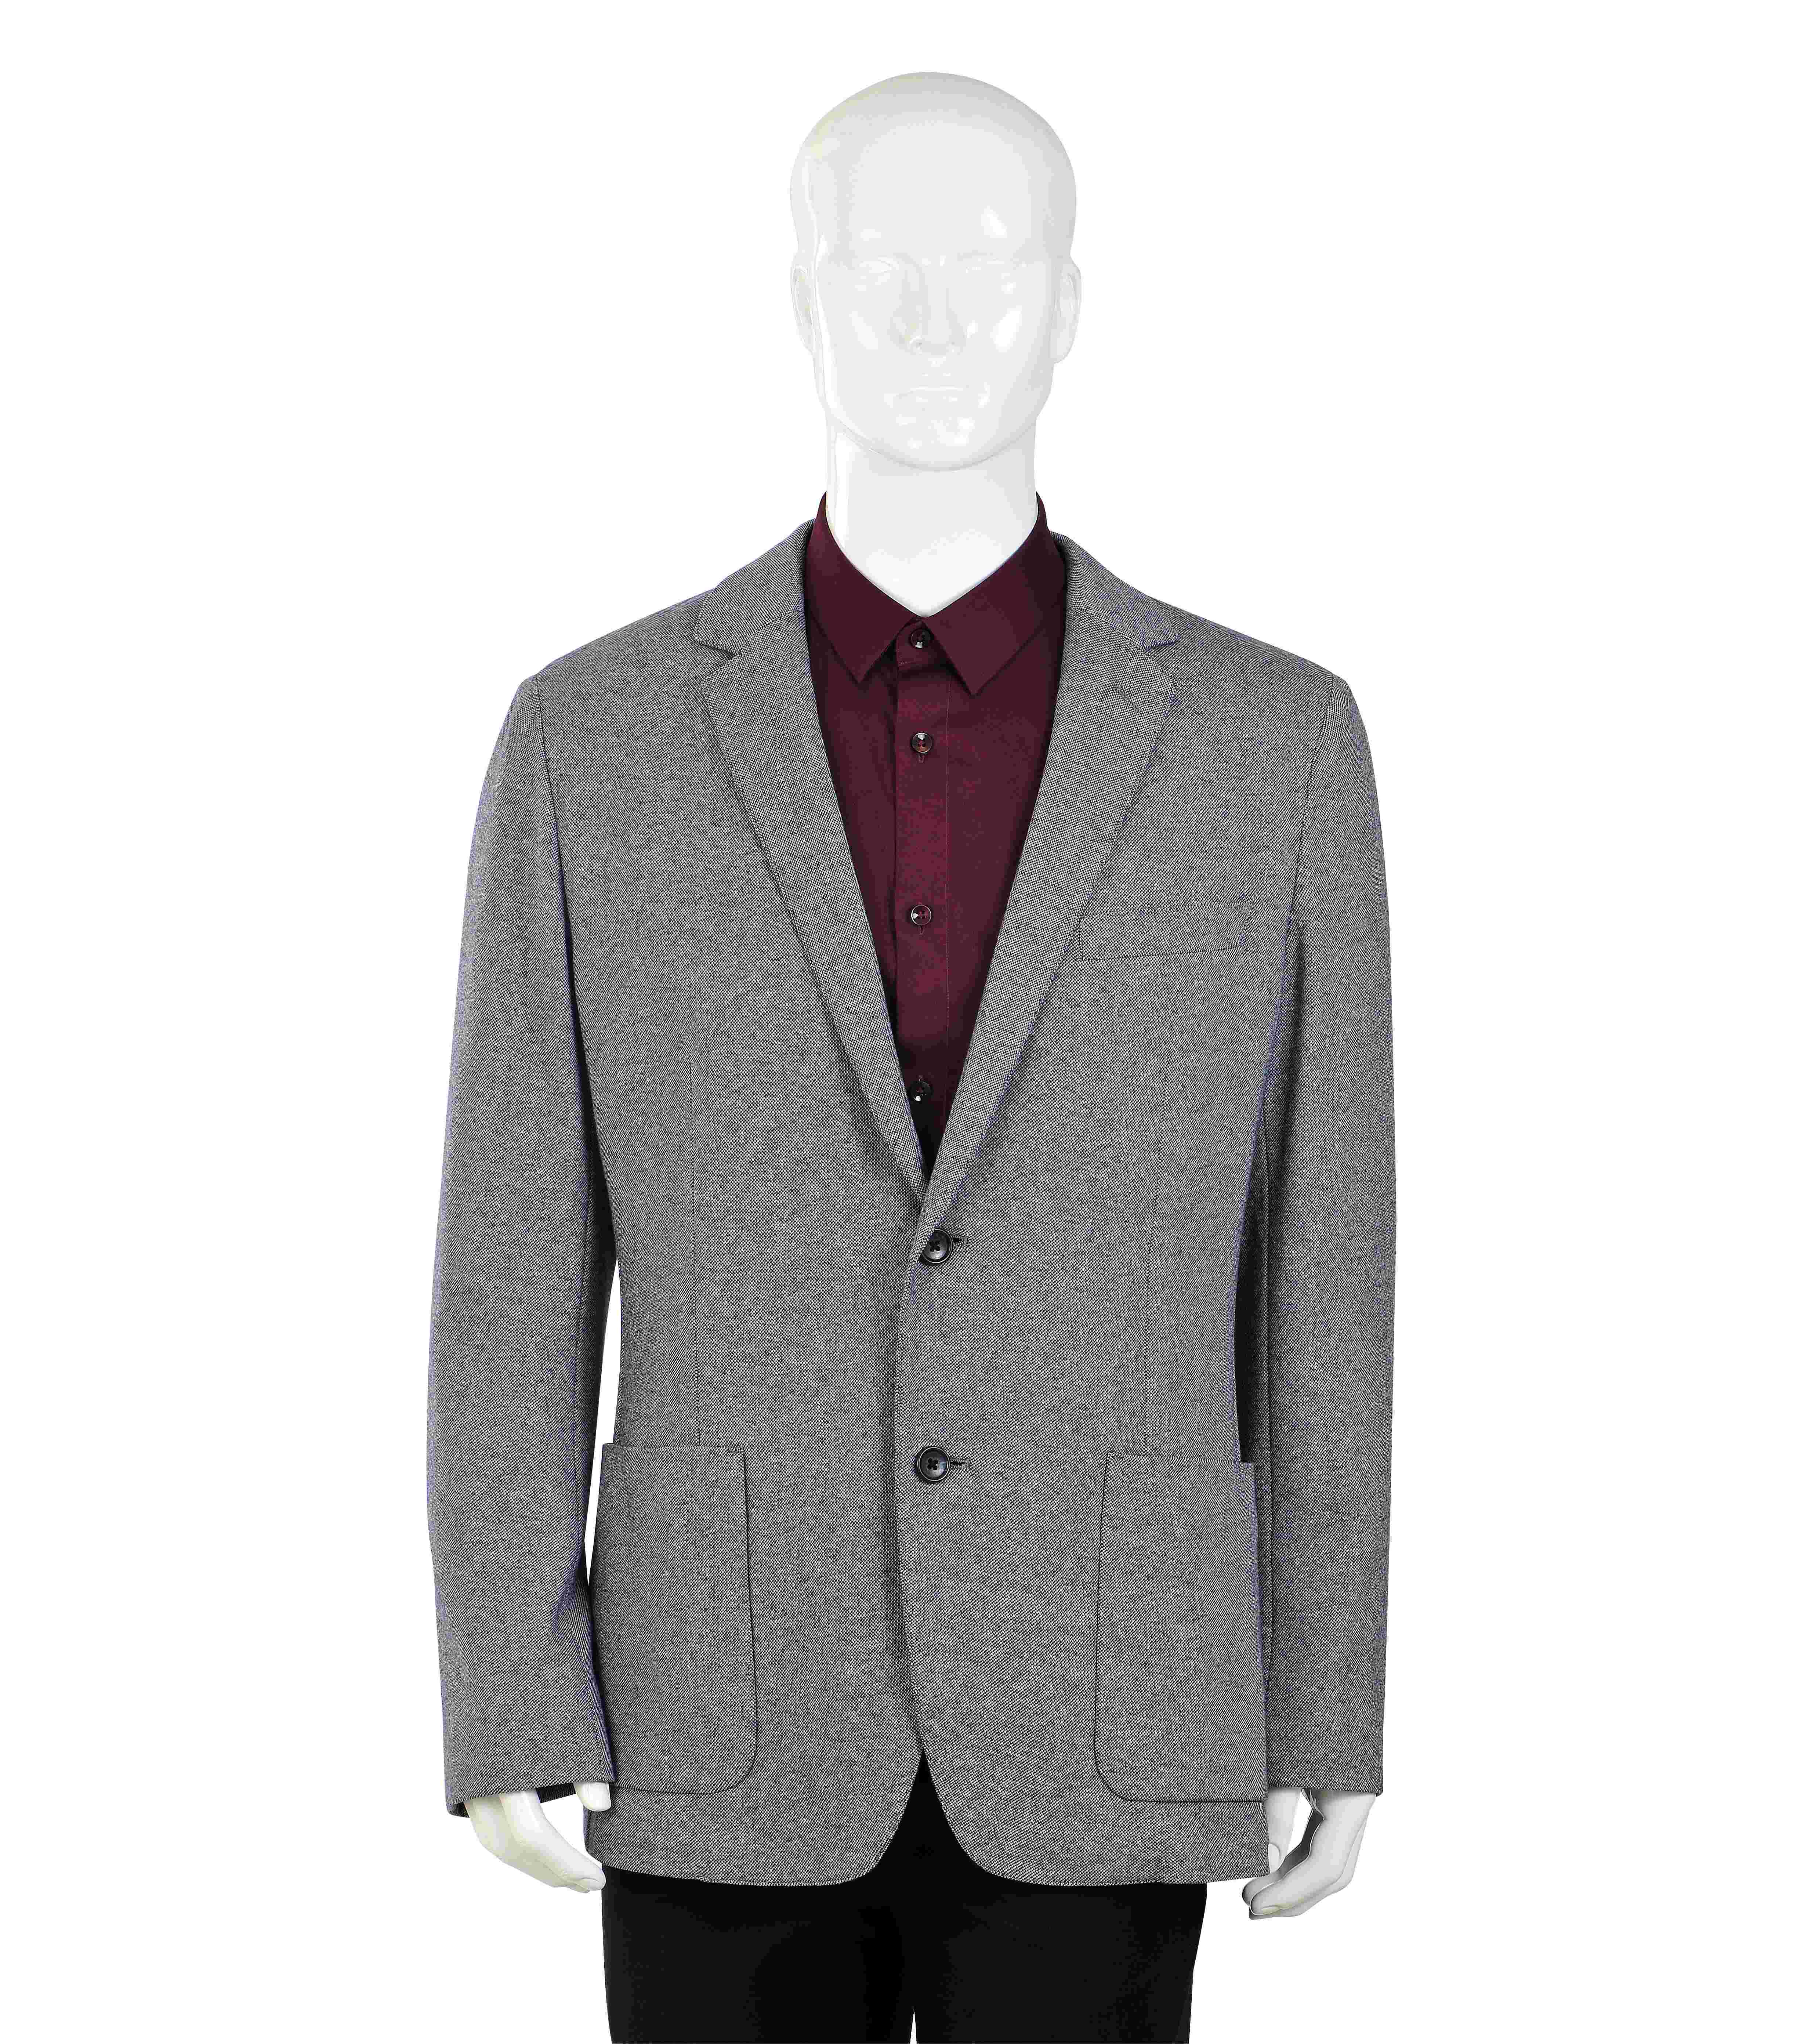 Men's single button casual woven suit